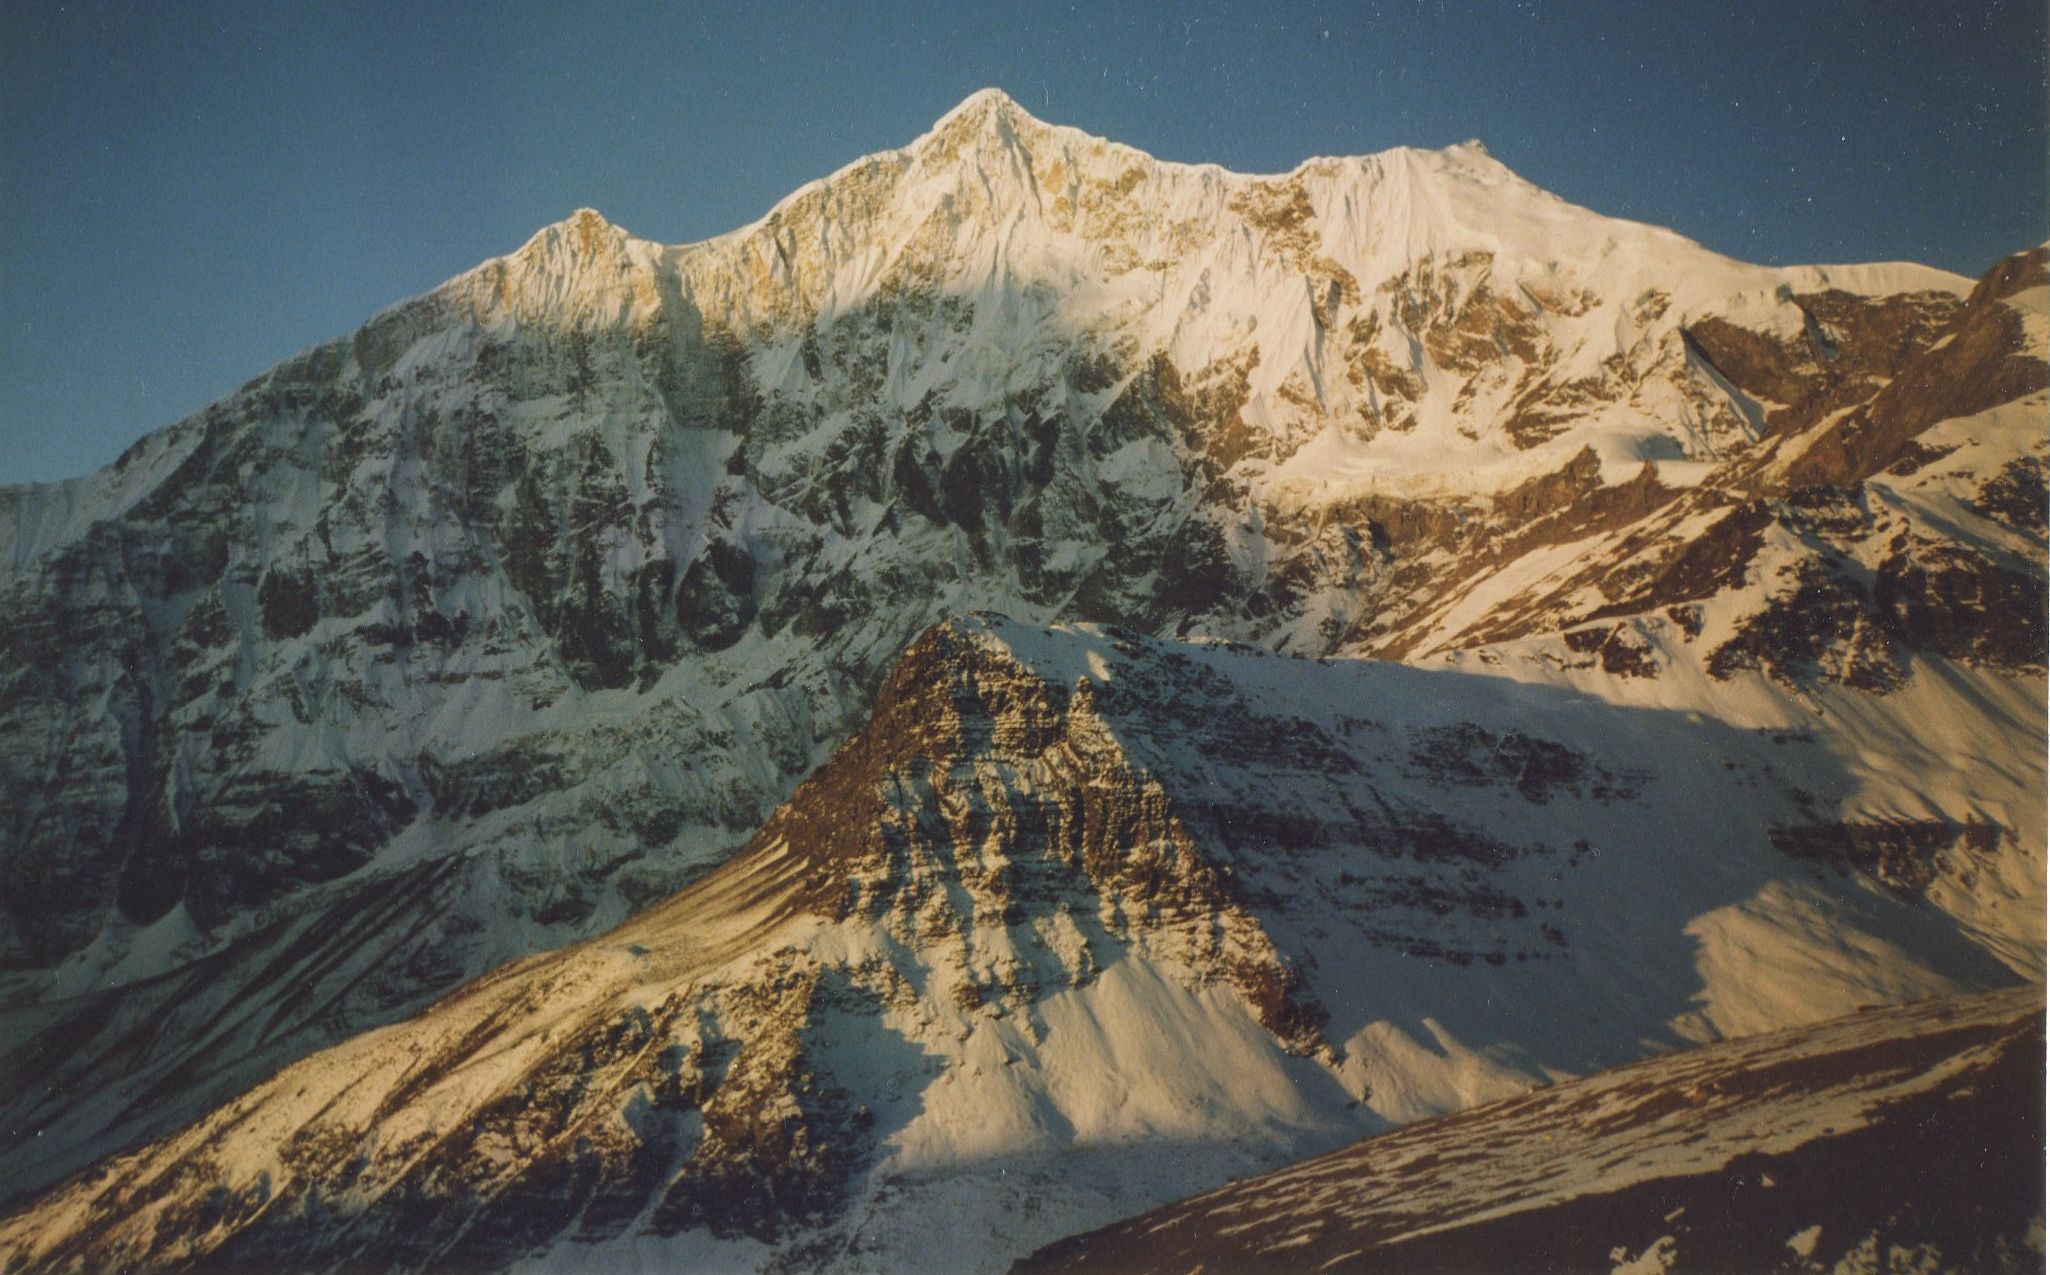 Sunrise on Tukuche Peak on ascent of Thapa Peak